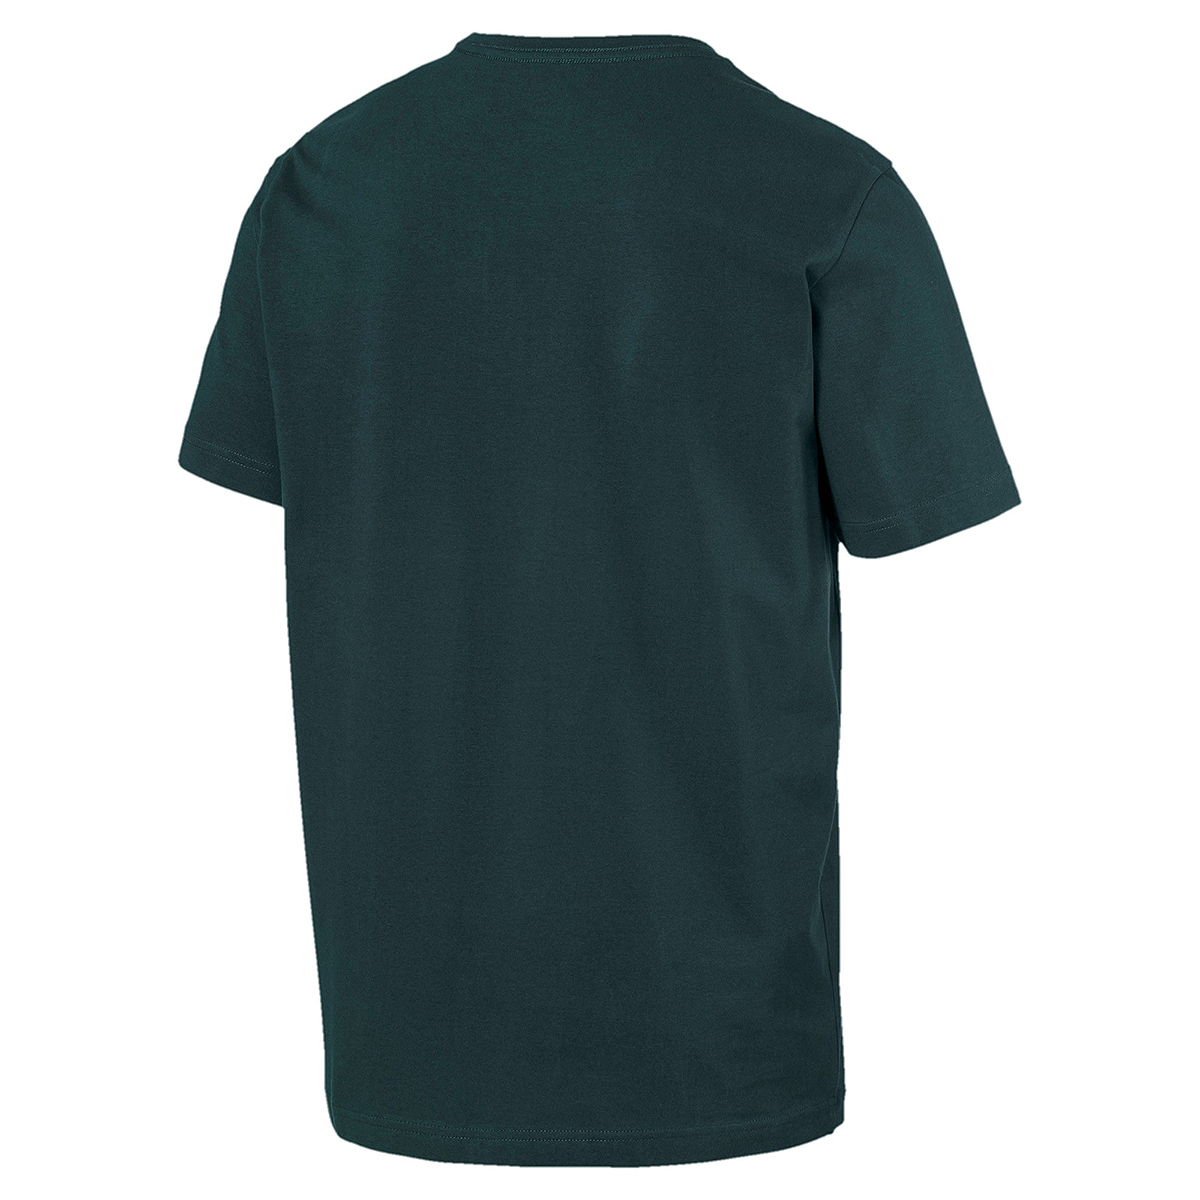 PUMA Herren Amplified Tee T-Shirt grün 854655 30